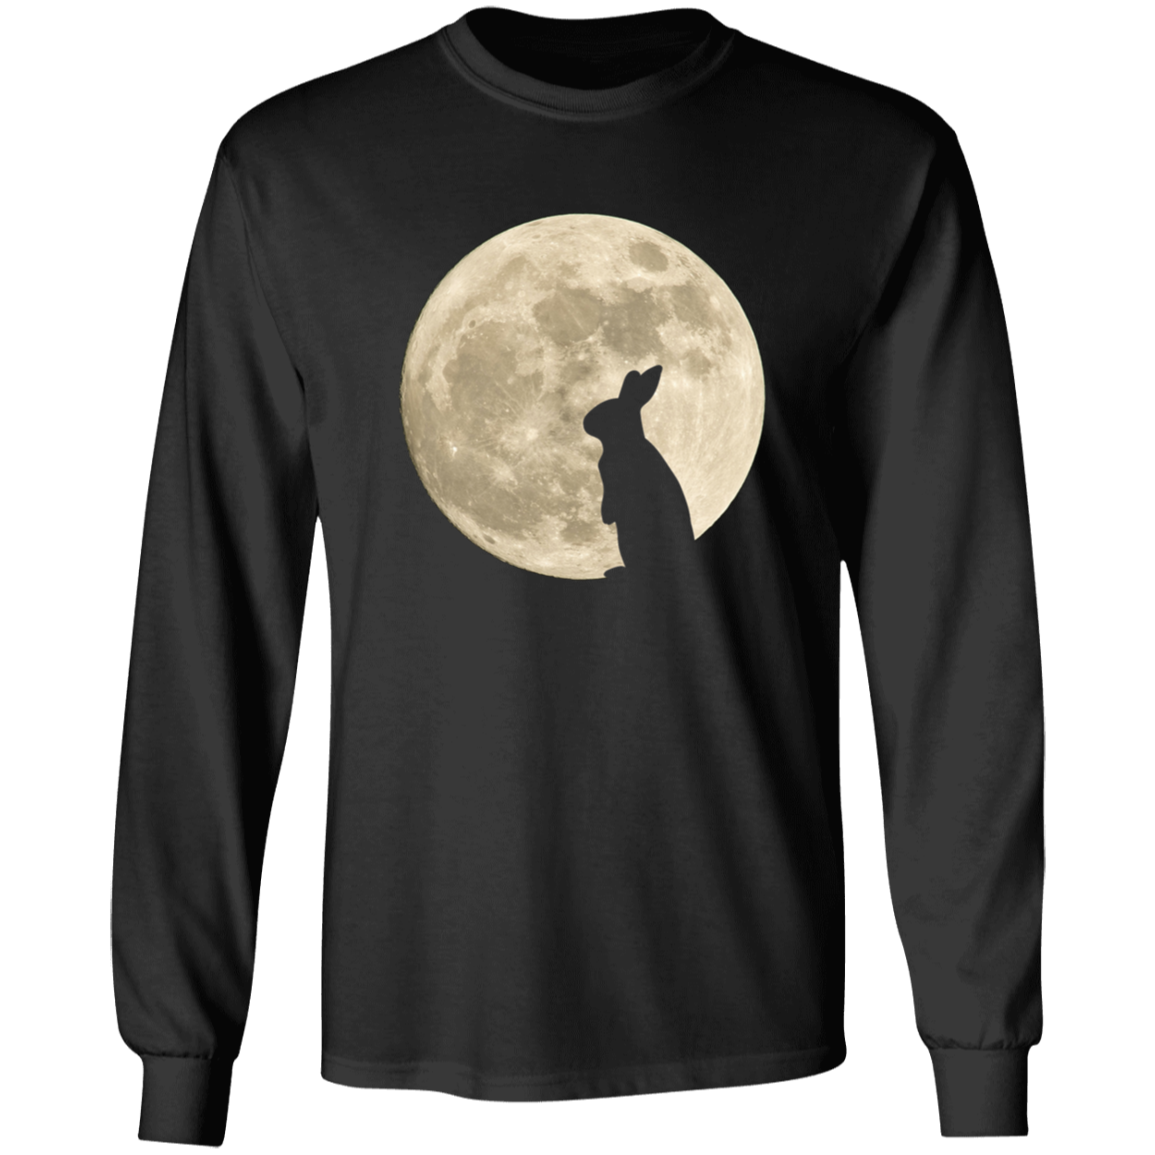 Bunny Moon 2 - T-shirts, Hoodies and Sweatshirts